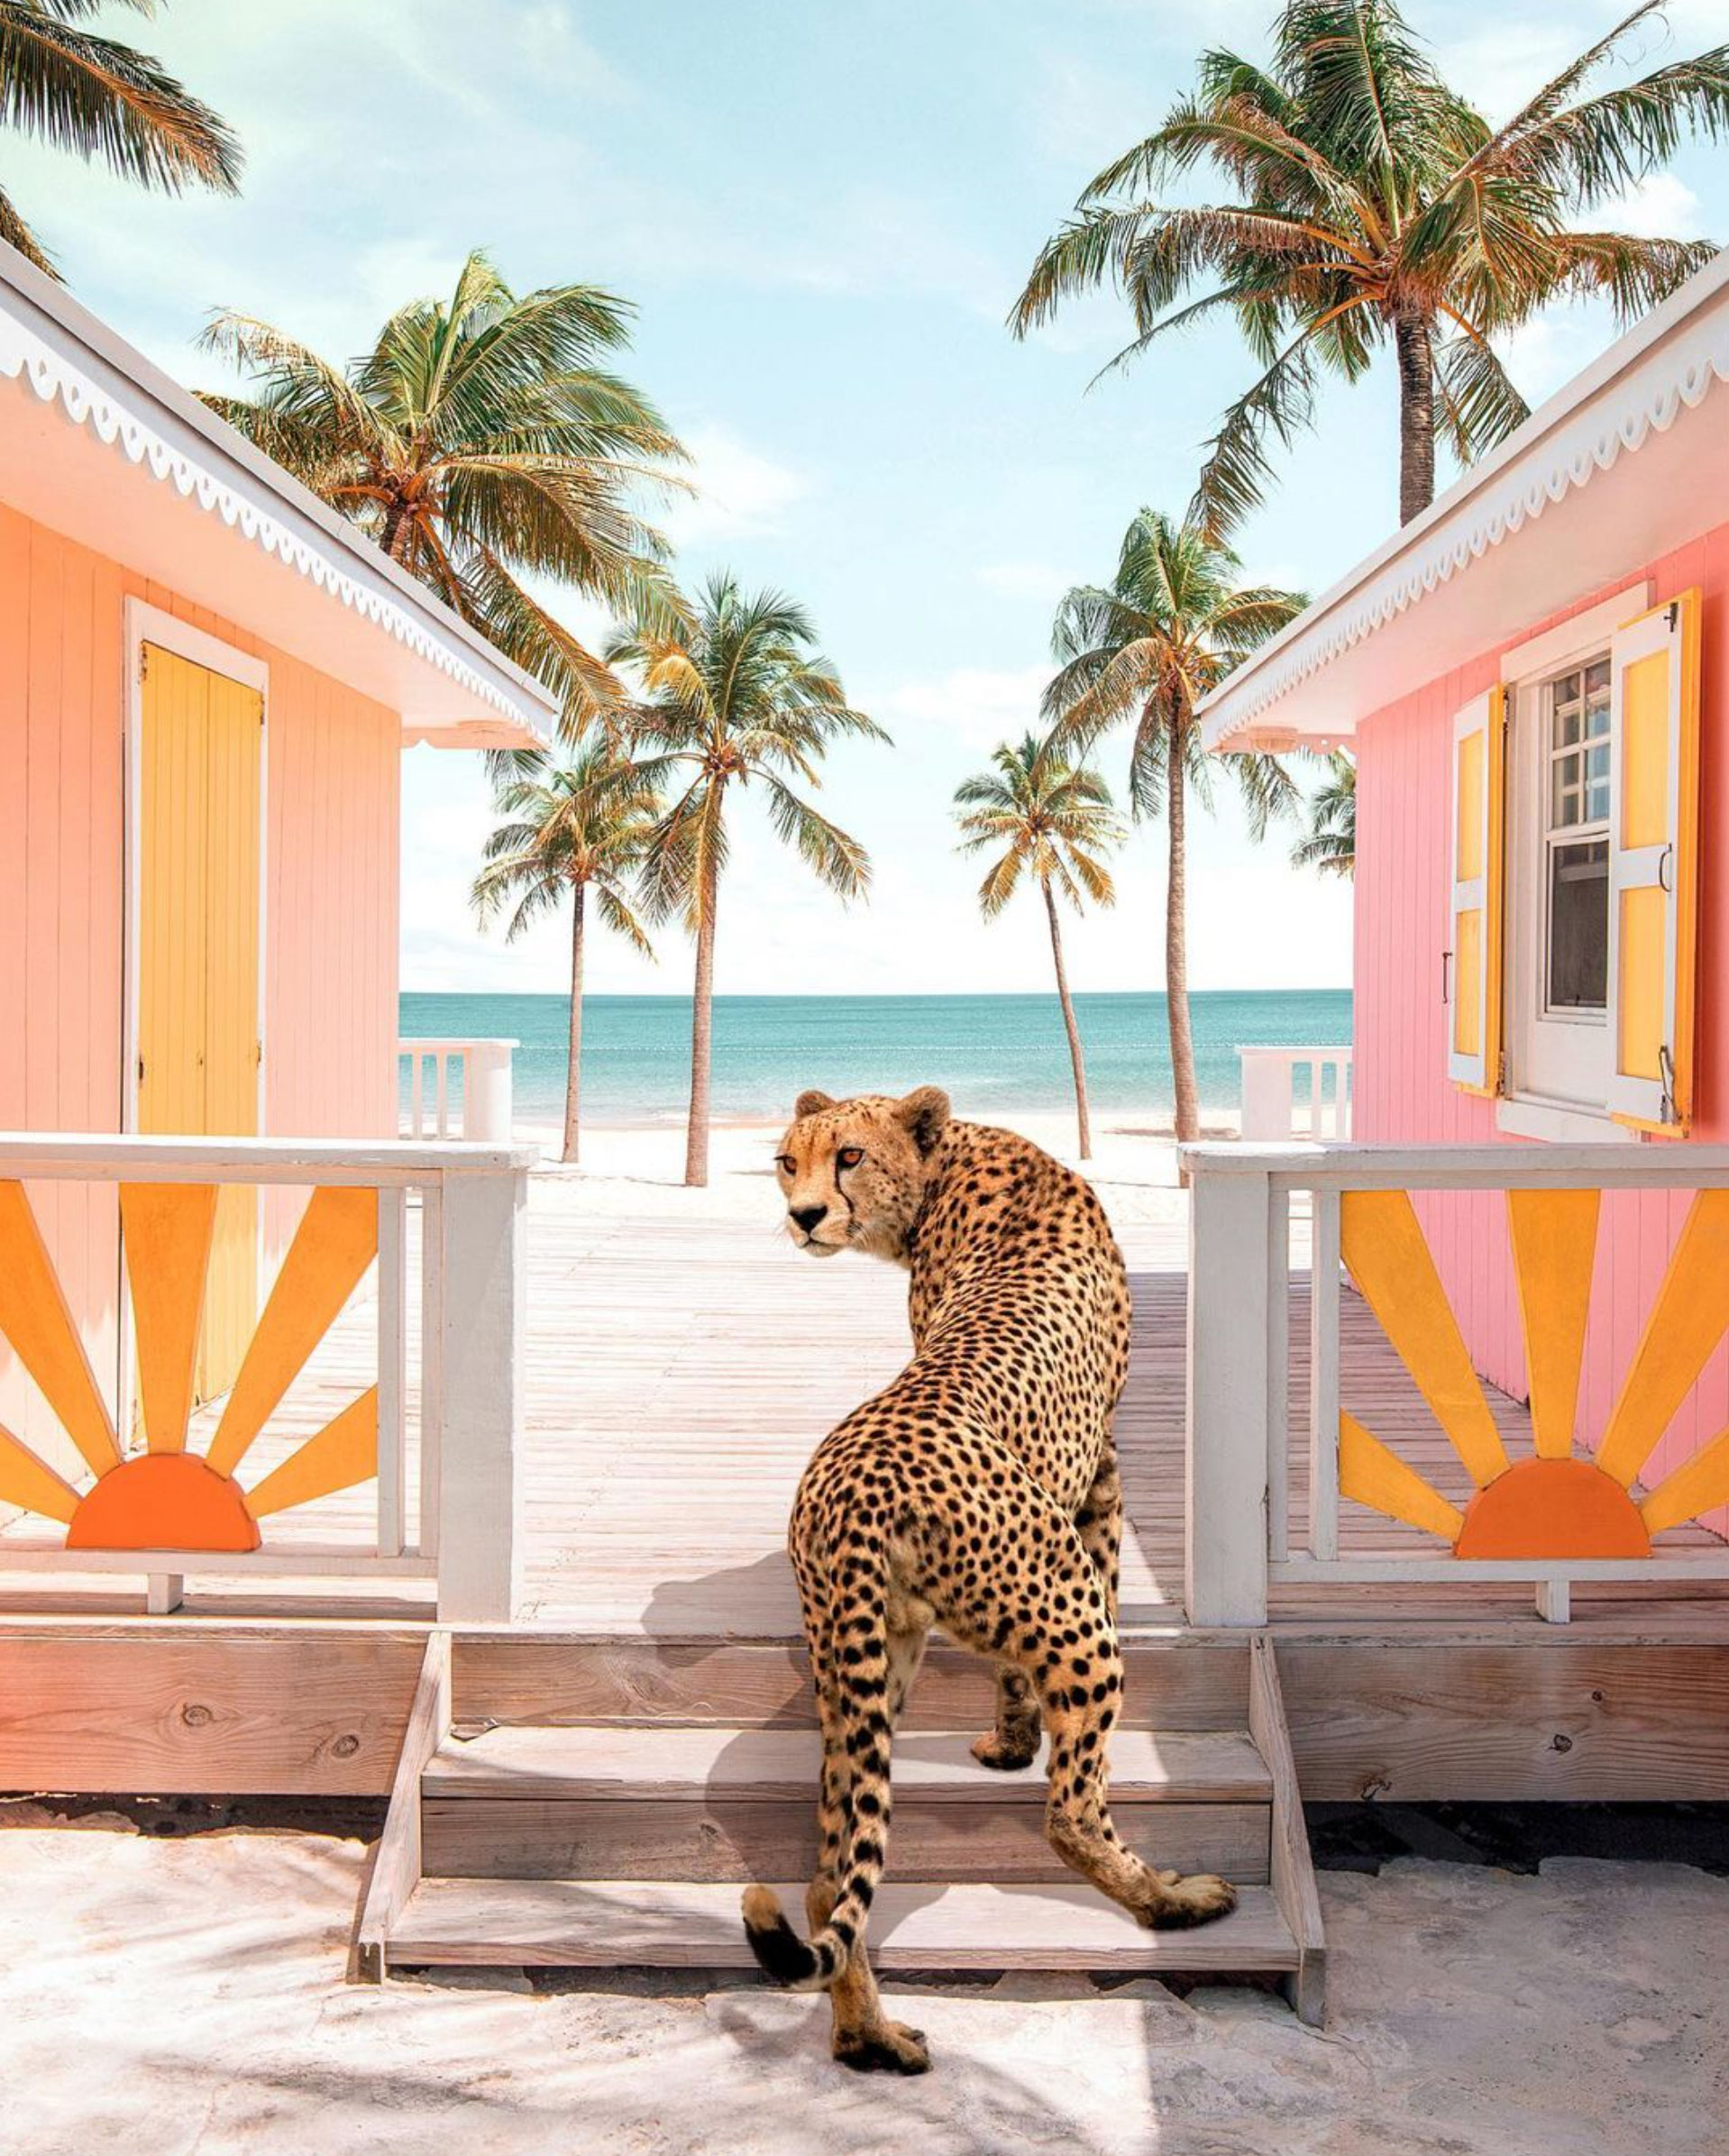 Image of cheetah at the beach